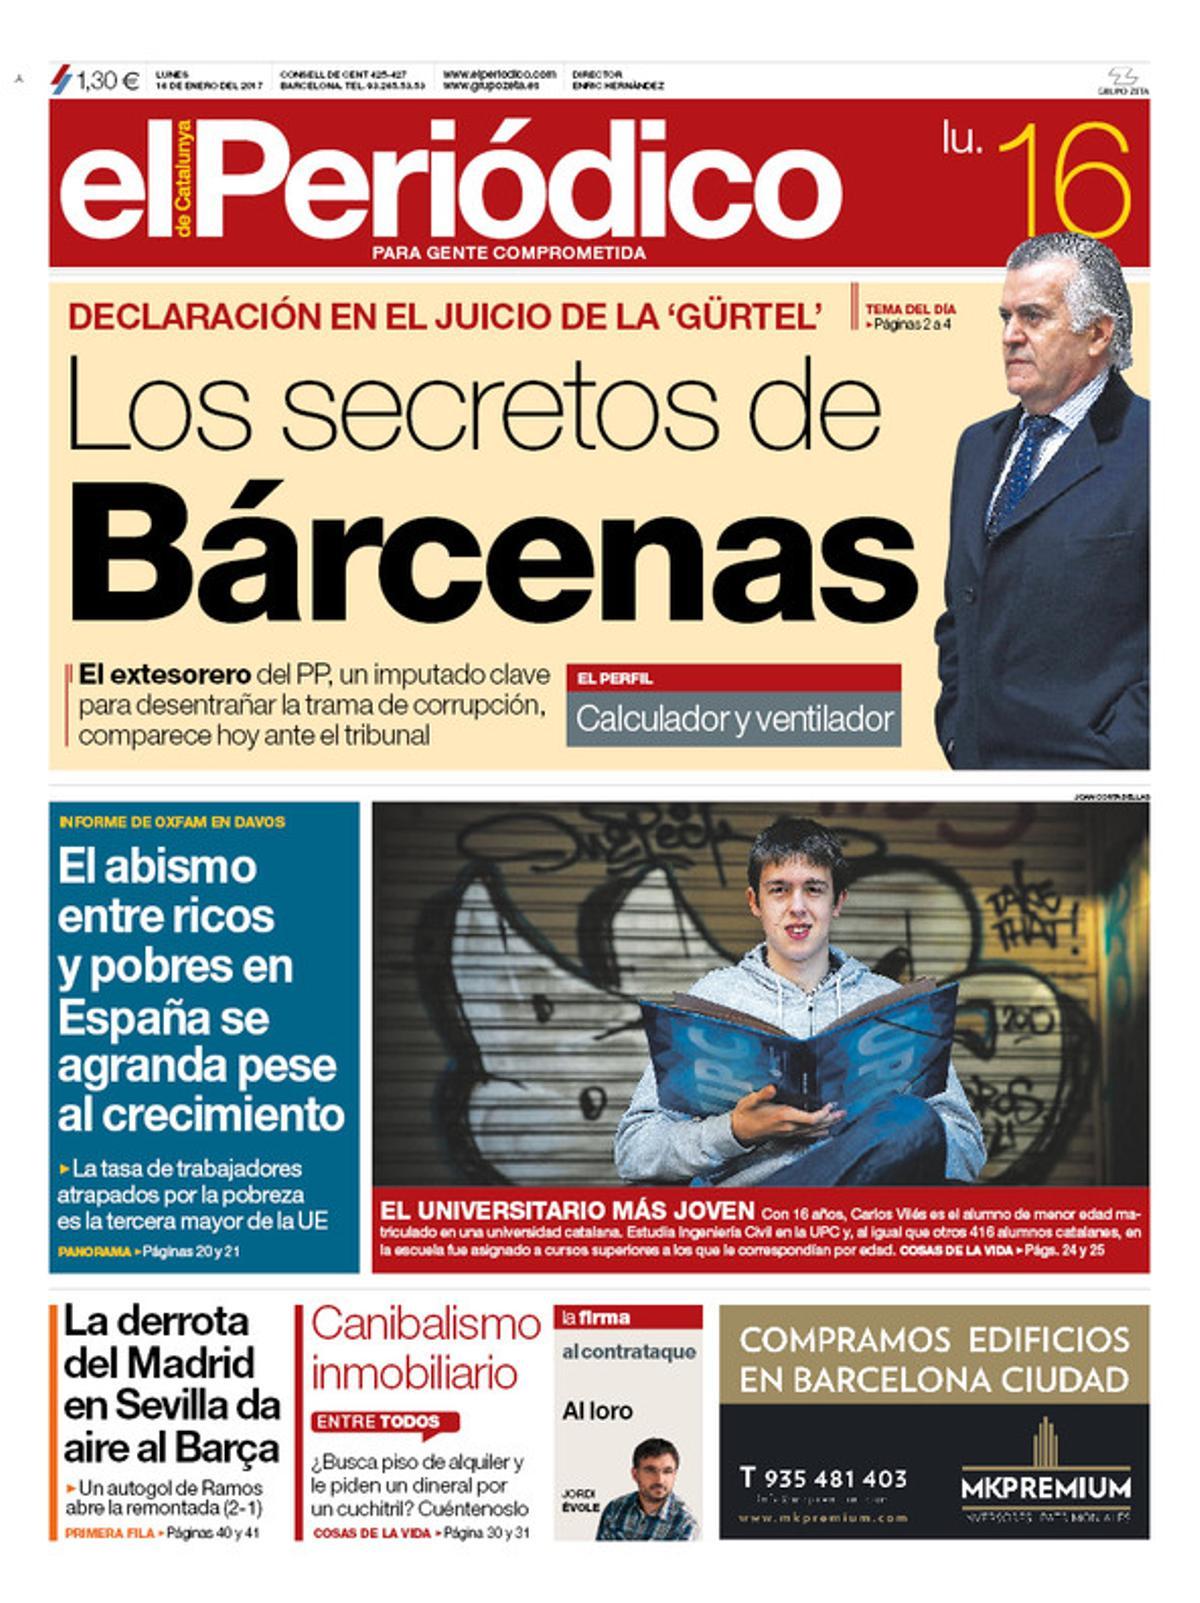 La portada de EL PERIÓDICO del 16 de enero del 2017.